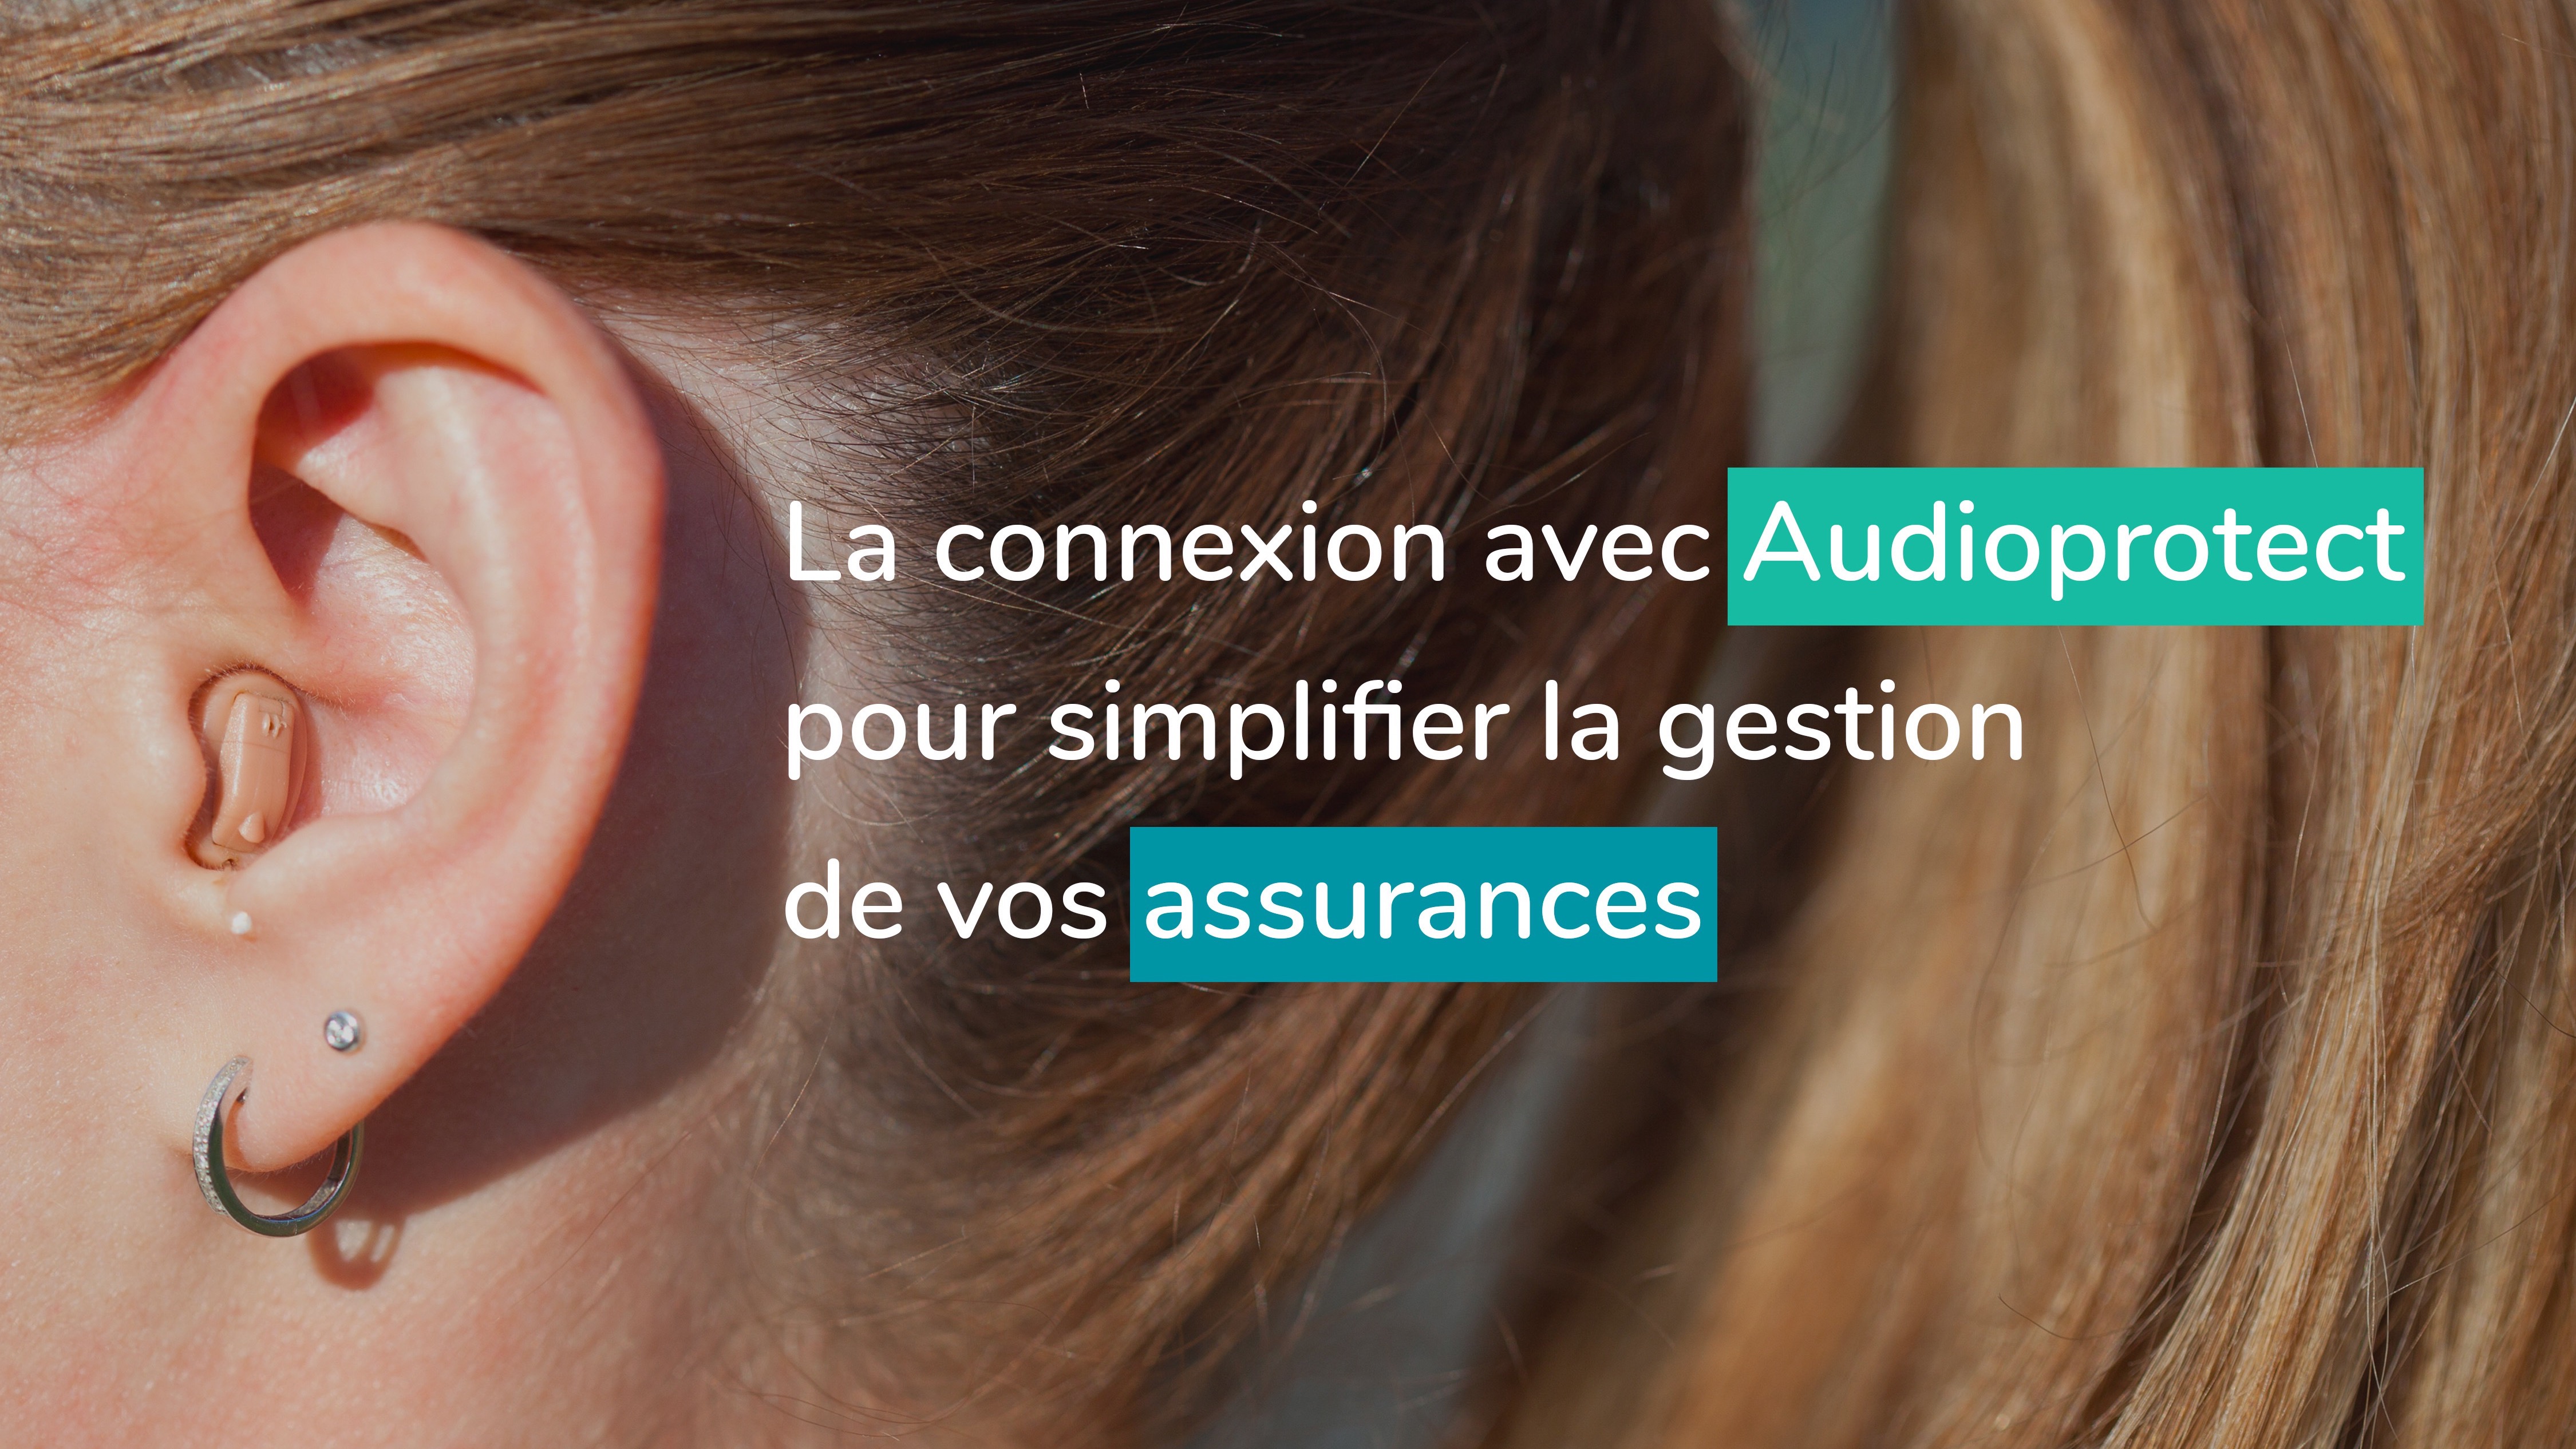 L’assurance Audioprotect pour assurer les appareils auditifs de vos patients